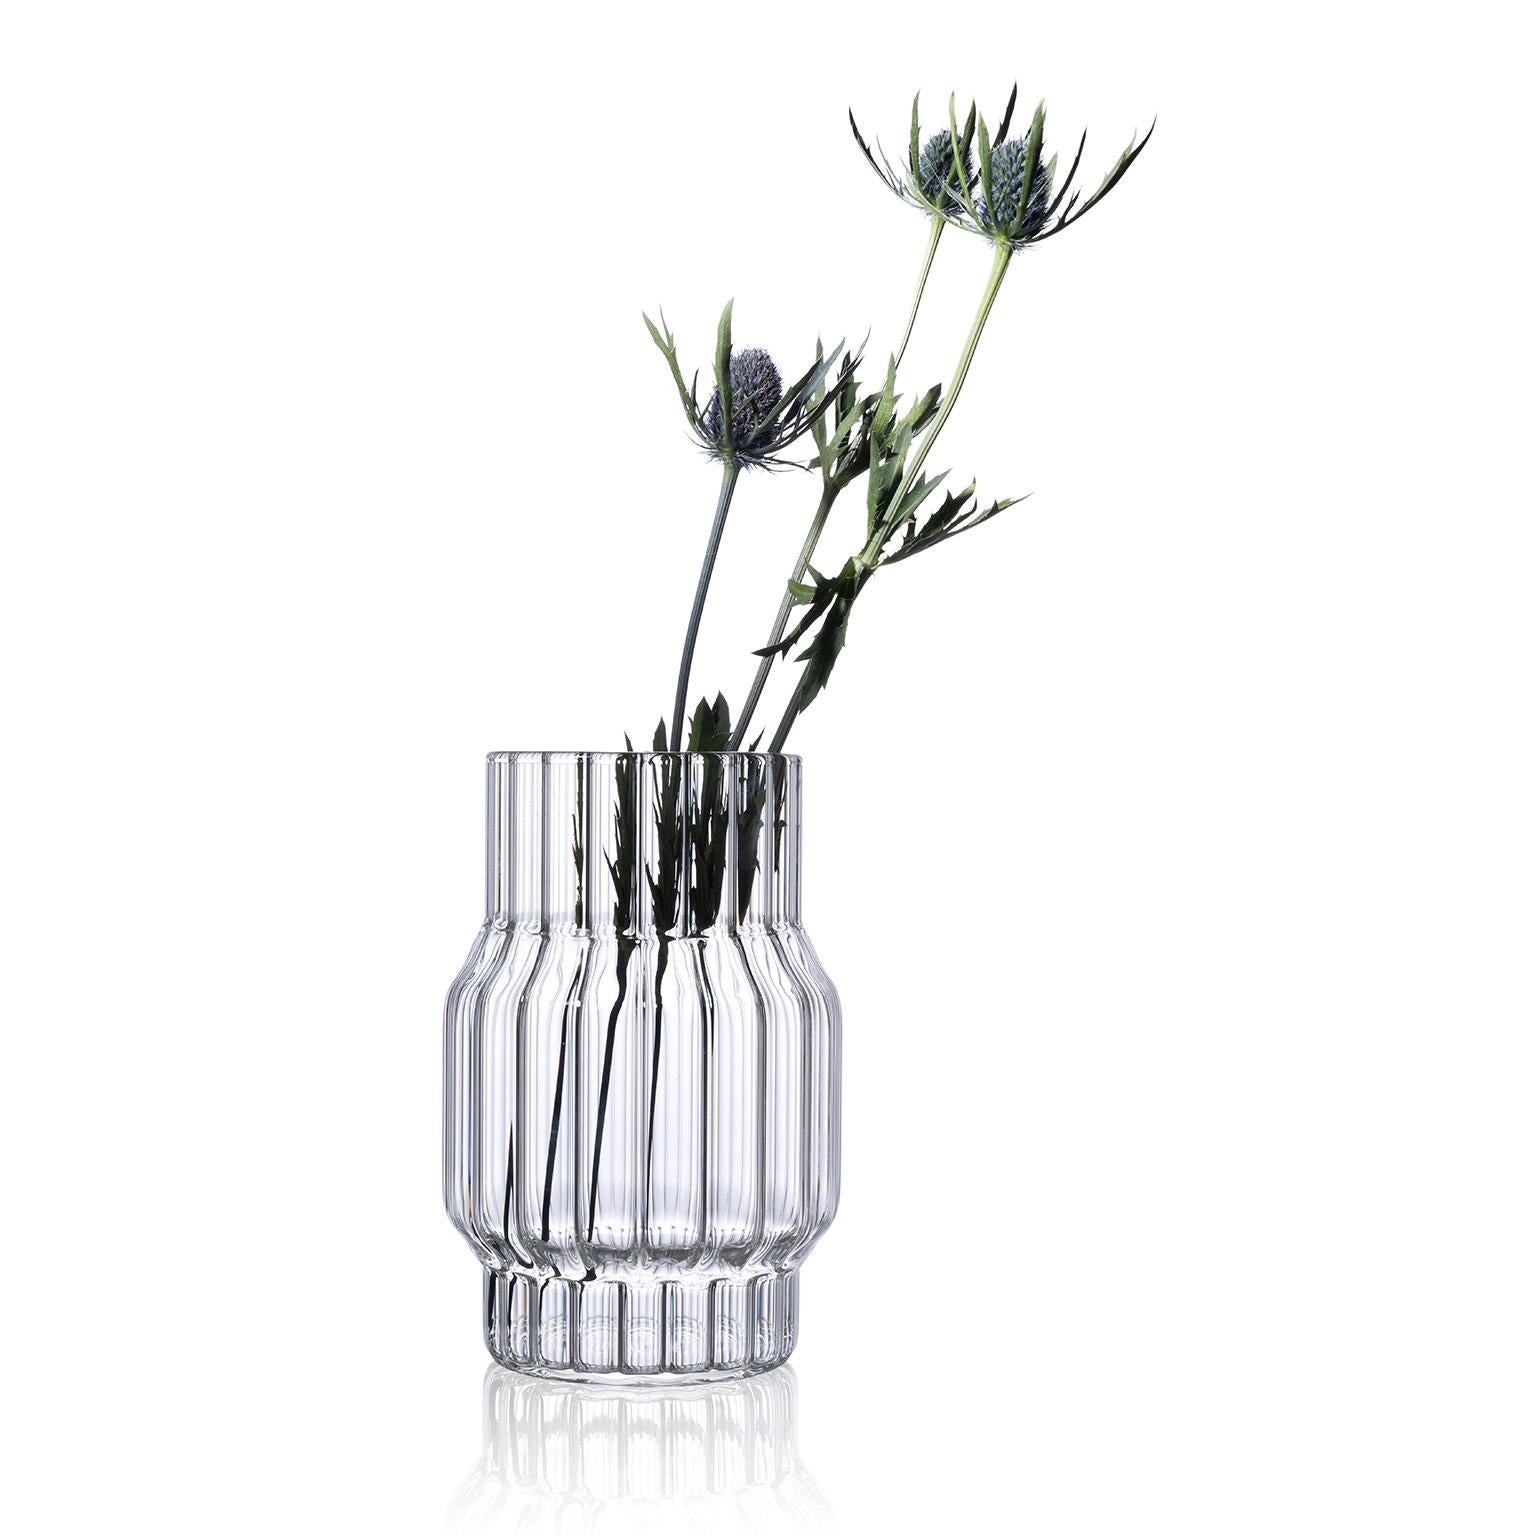 Die Albany Vasen-Kollektion stellt die Tradition auf den Kopf, indem sie das Innere der Vase mit komplizierten Rillen versieht. Die starken, einfachen Linien der Vasen machen sie zu einer perfekten Ergänzung für jedes Interieur. Jedes Exemplar wird